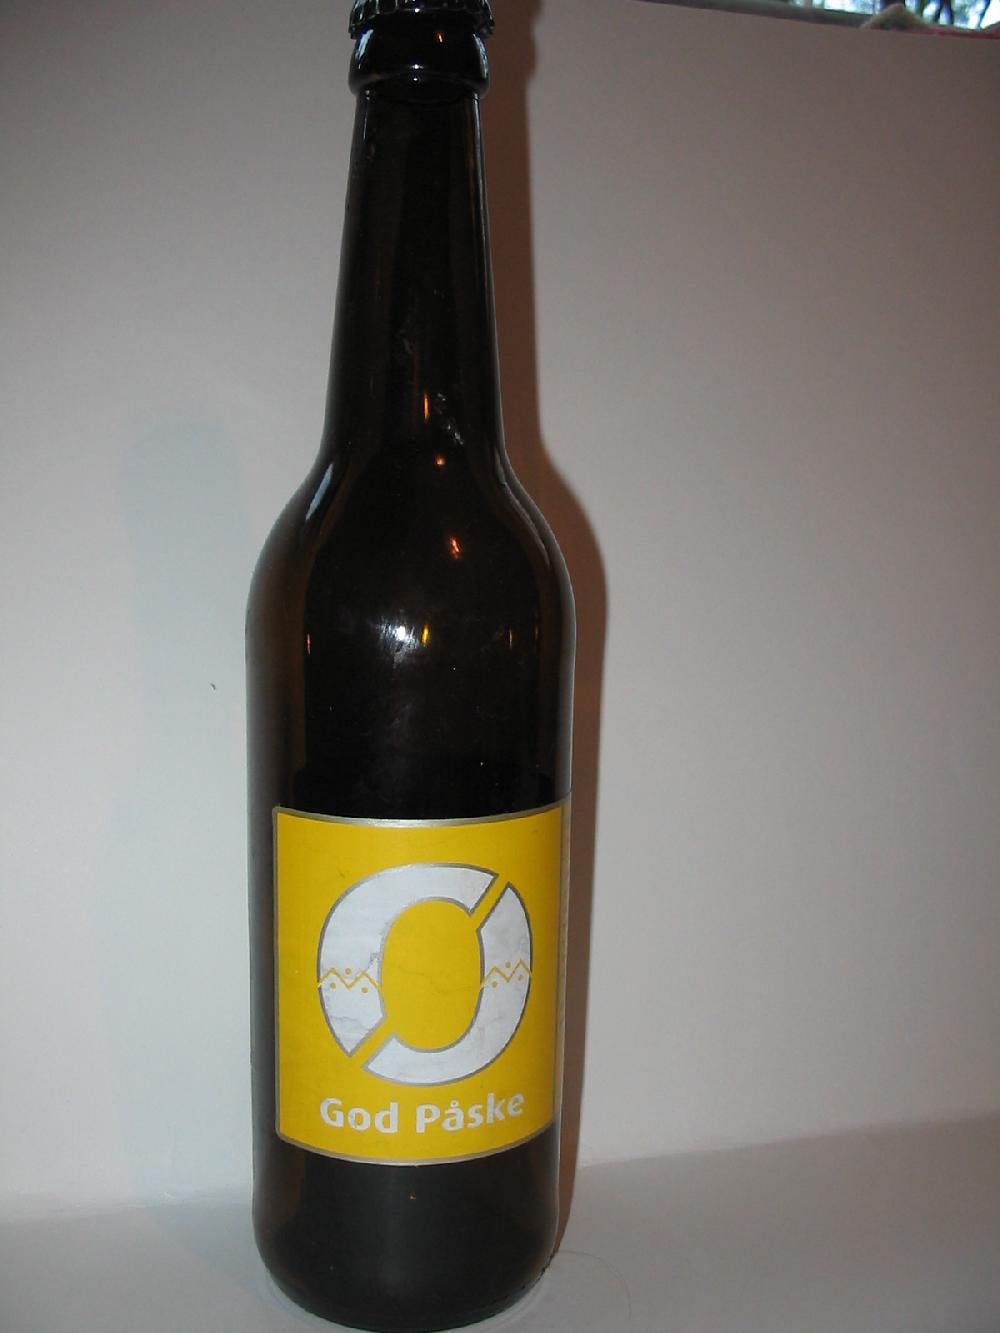 Nøgne Ø God Påske bottle by Nøgne Ø; Det Kompromissløse Bryggeri AS 